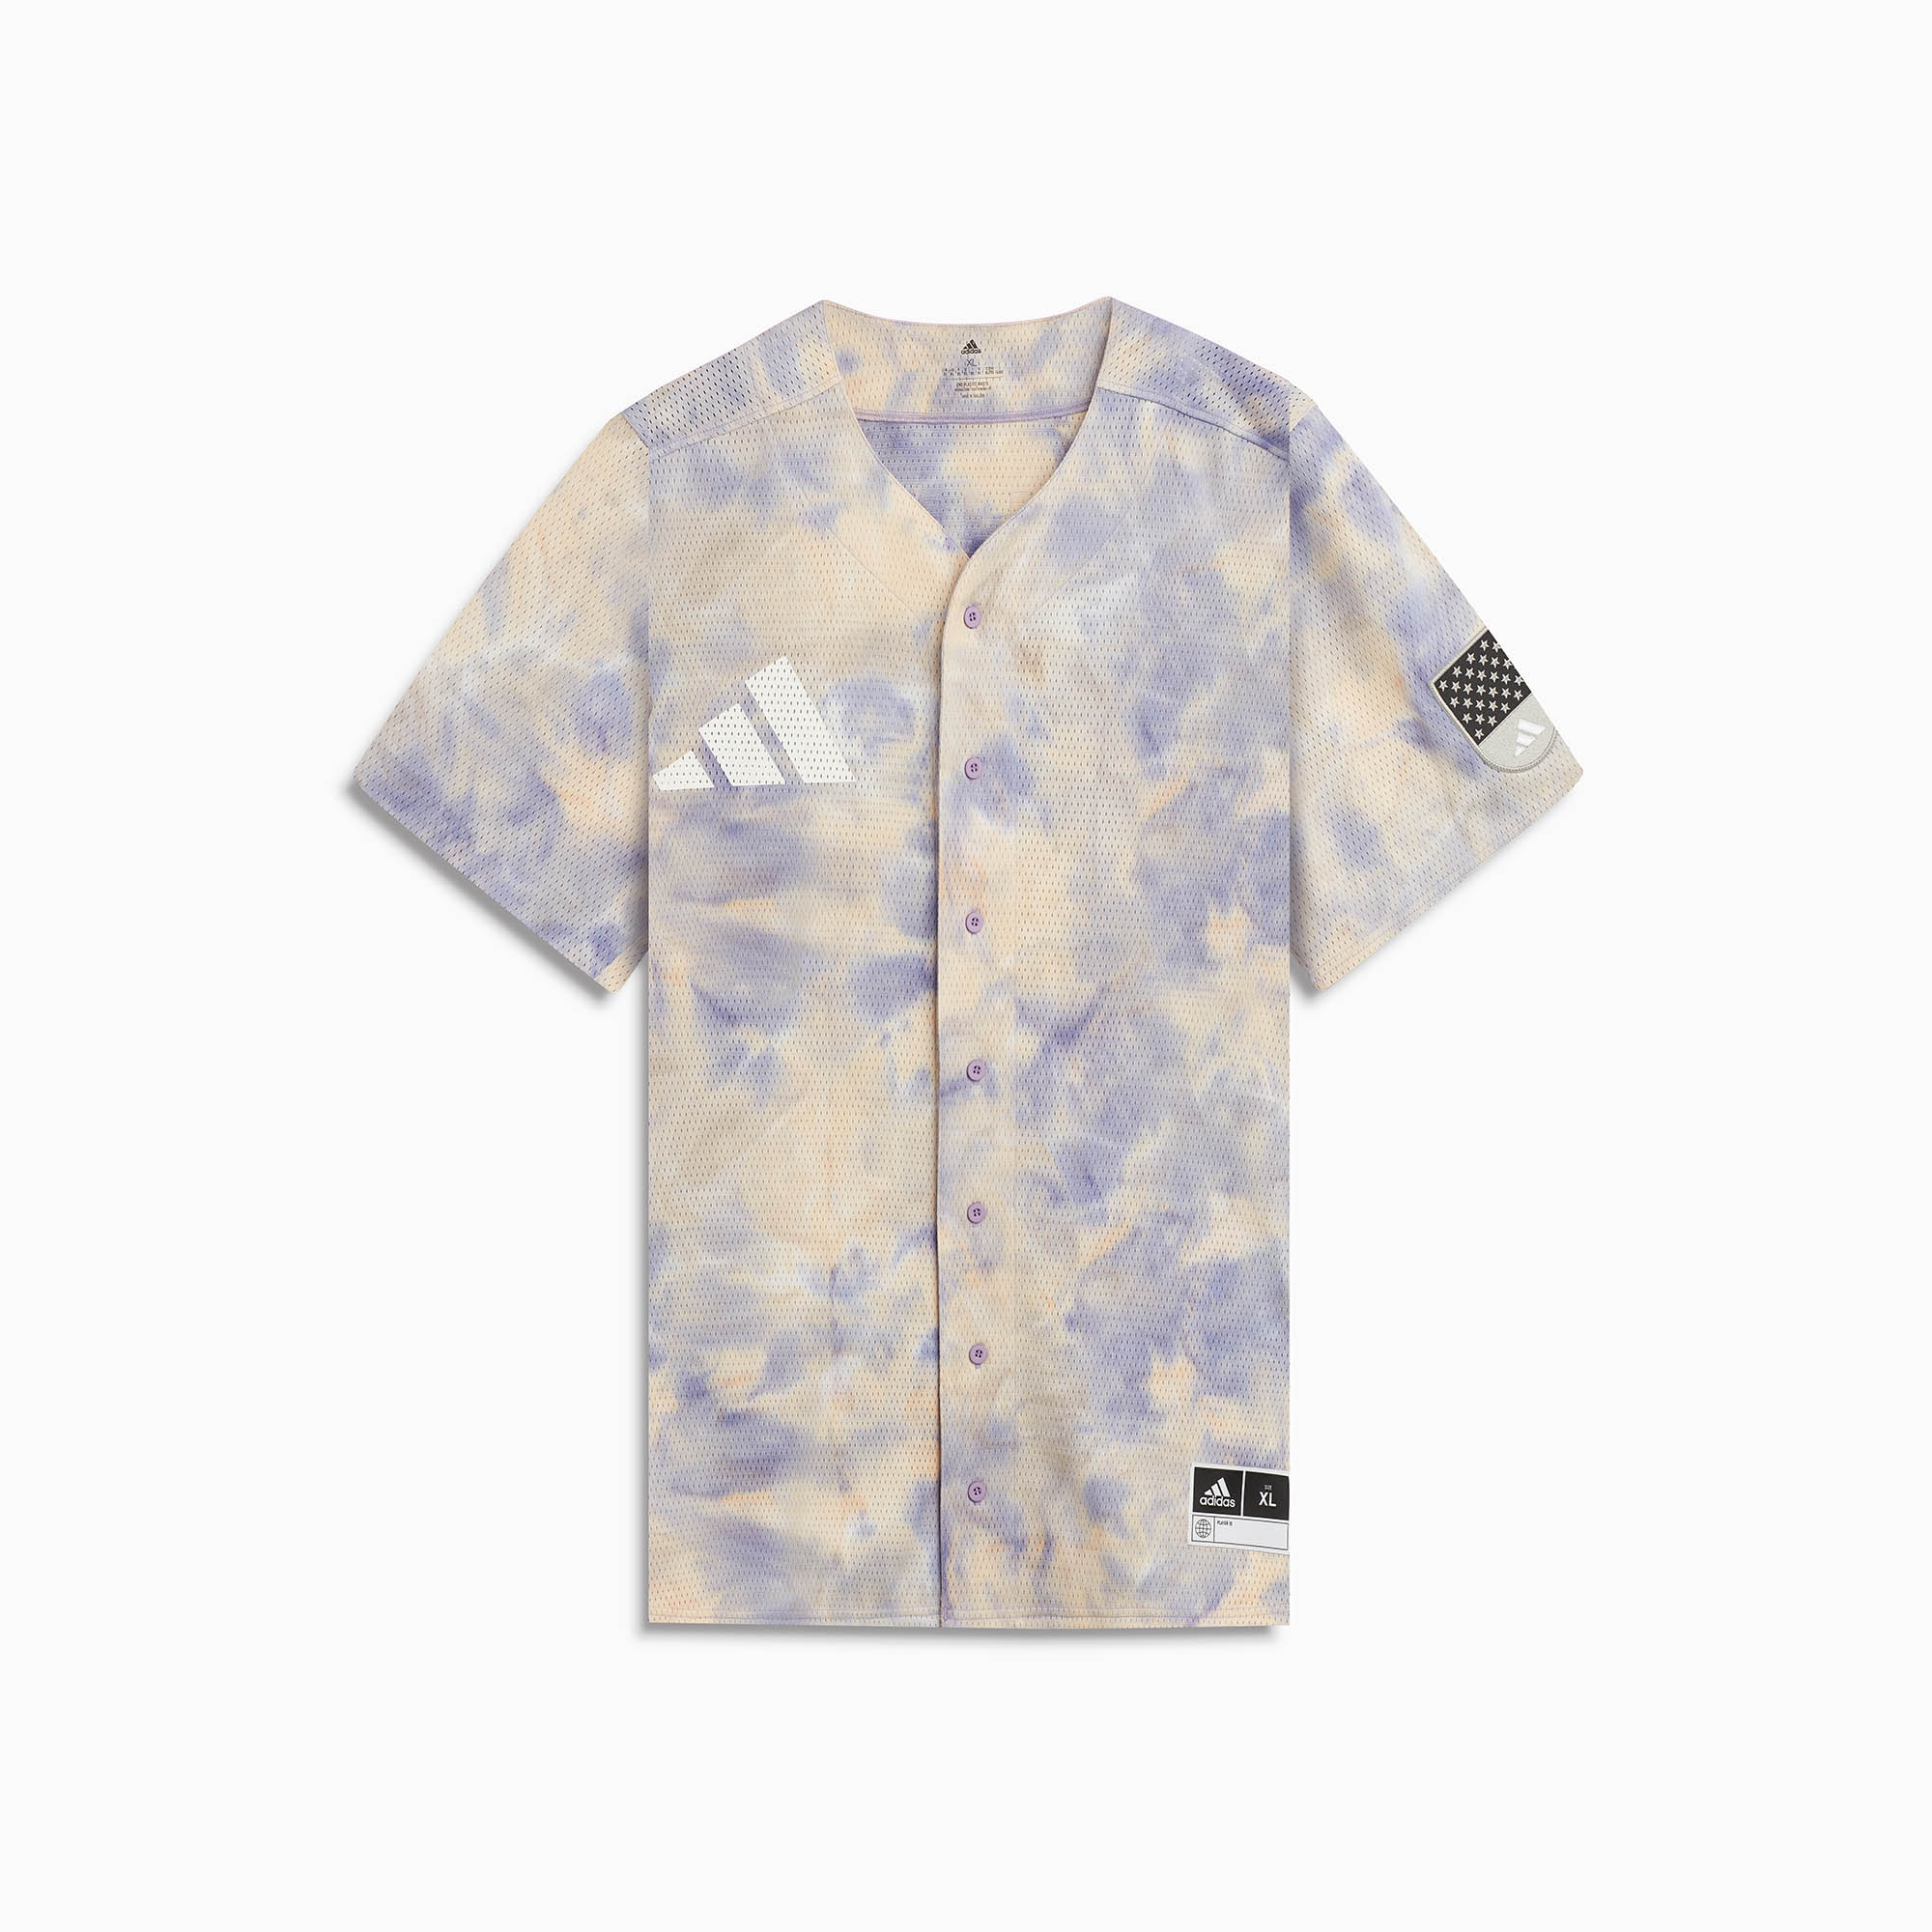 DP adidas Baseball jersey / pulse amber + magic lilac